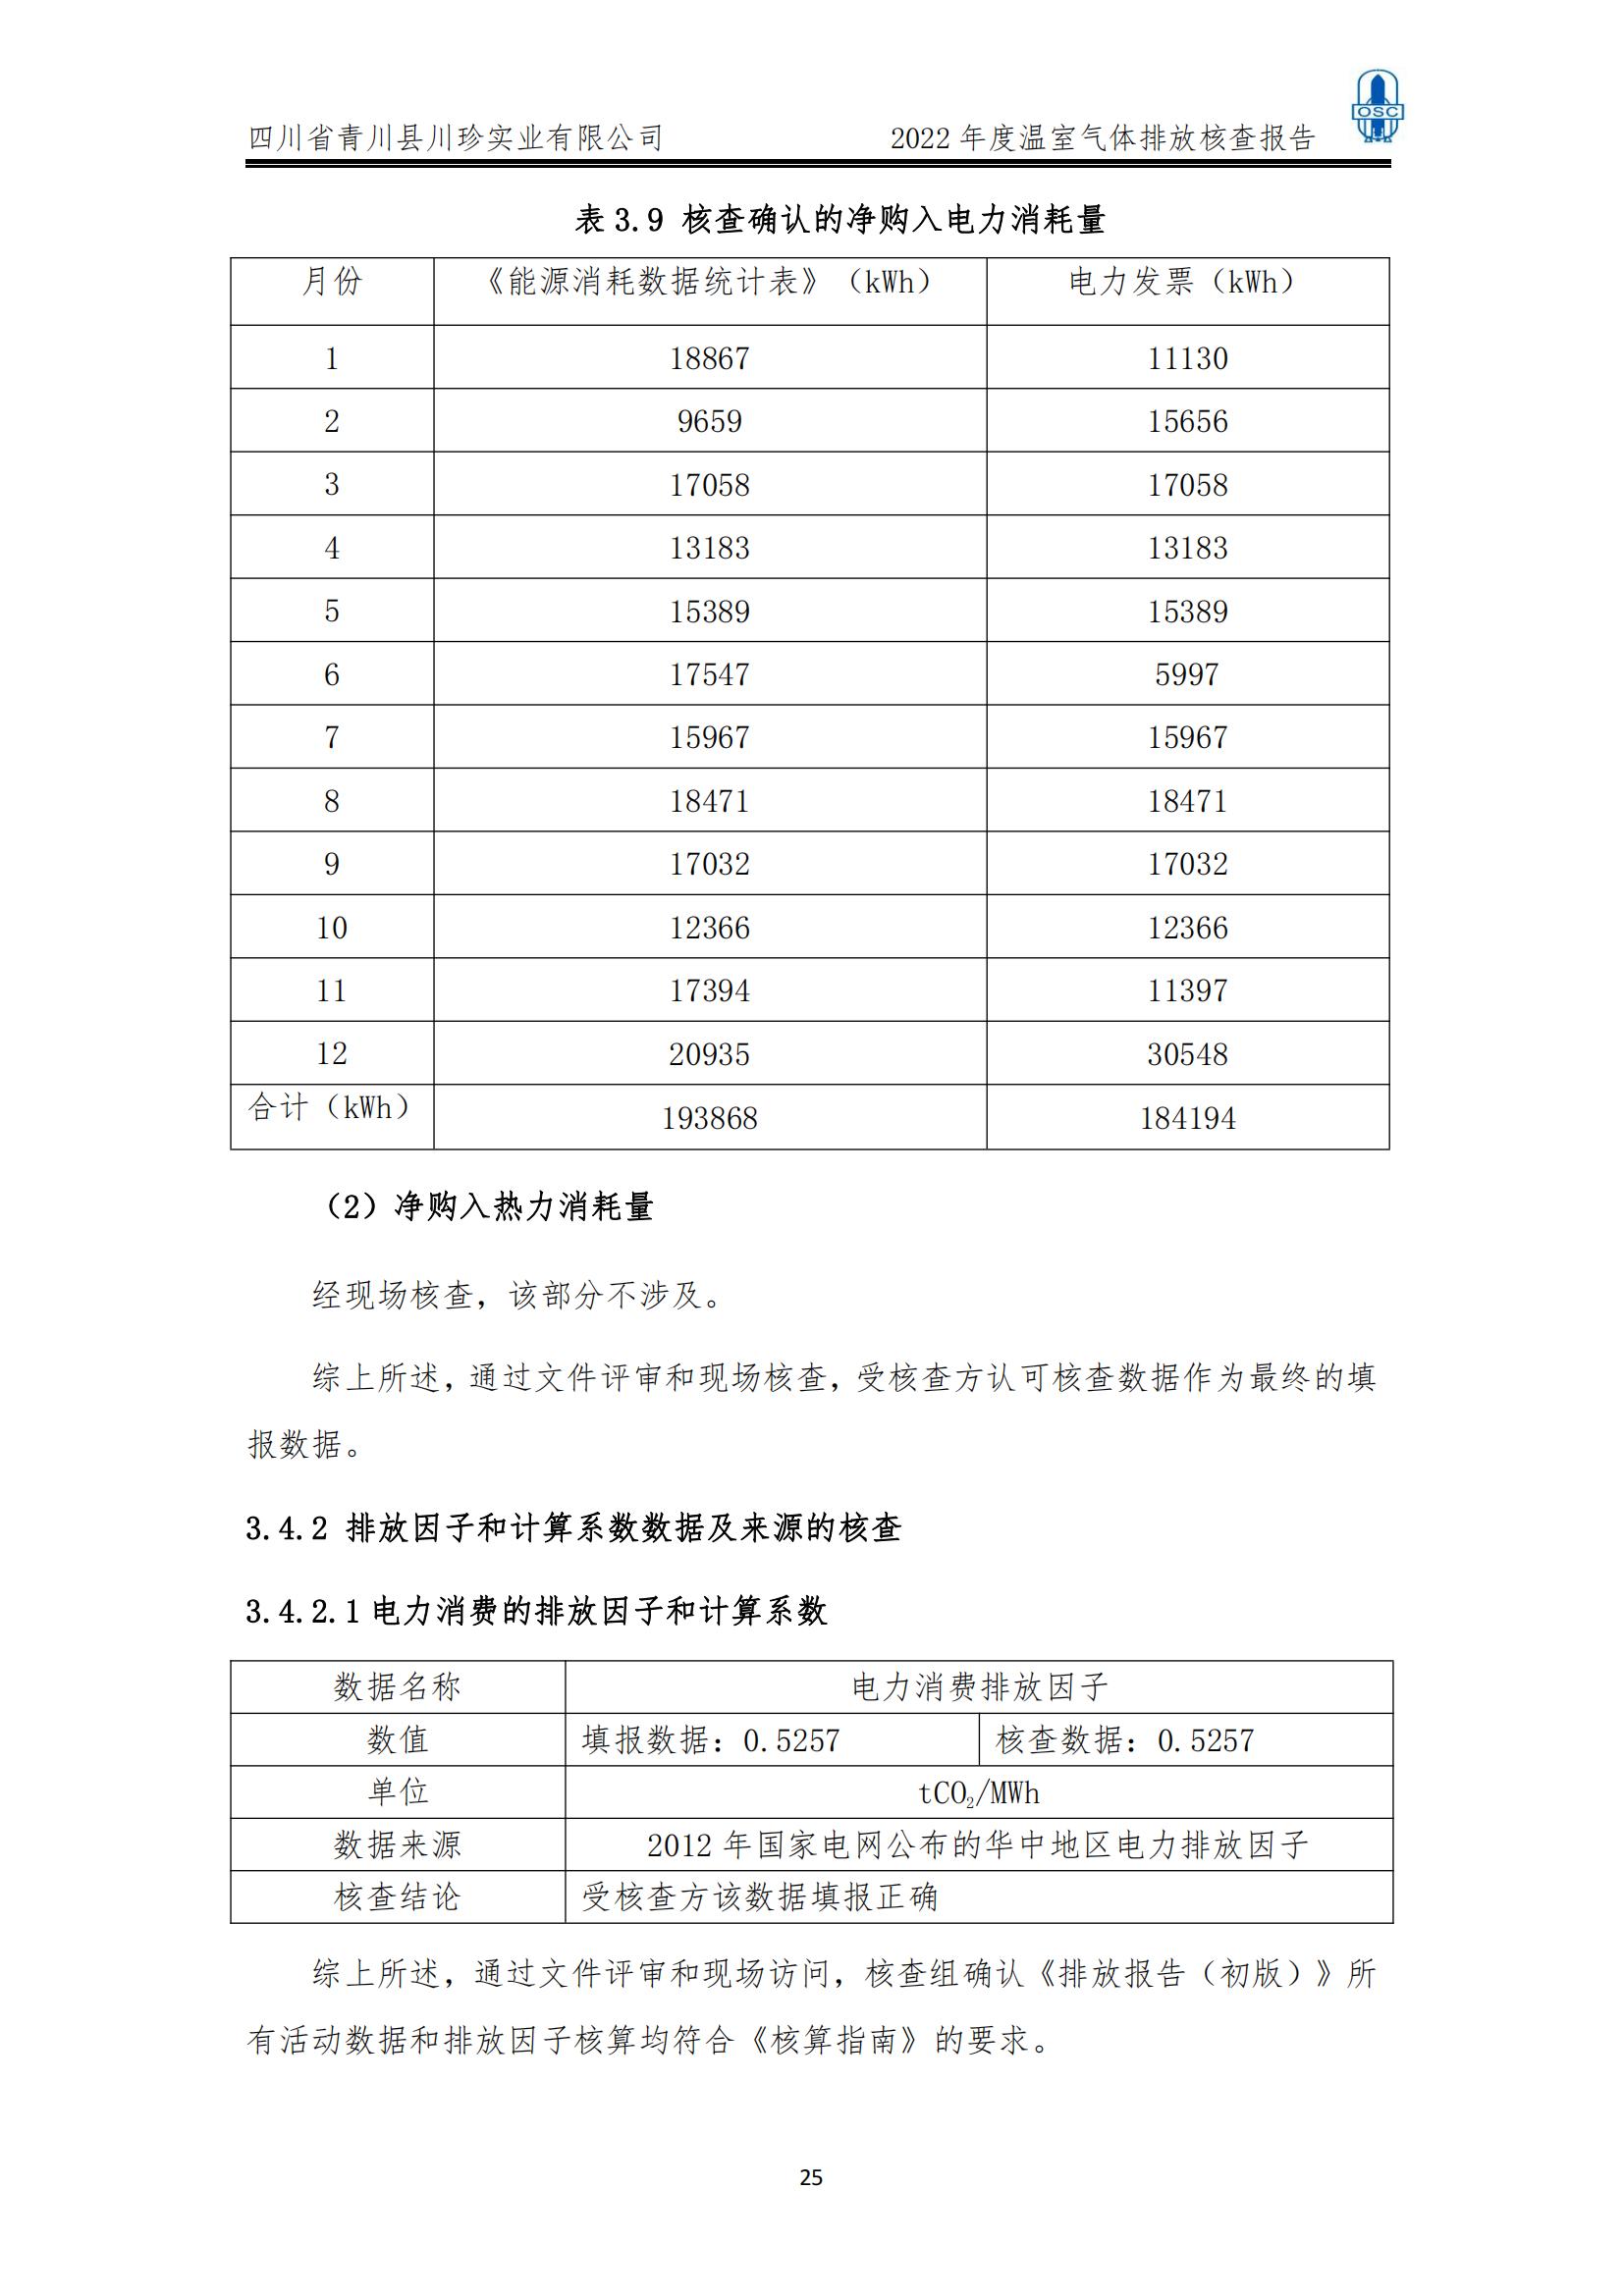 2022年度温室气体核查报告(四川省青川县川珍实业有限公司(图26)